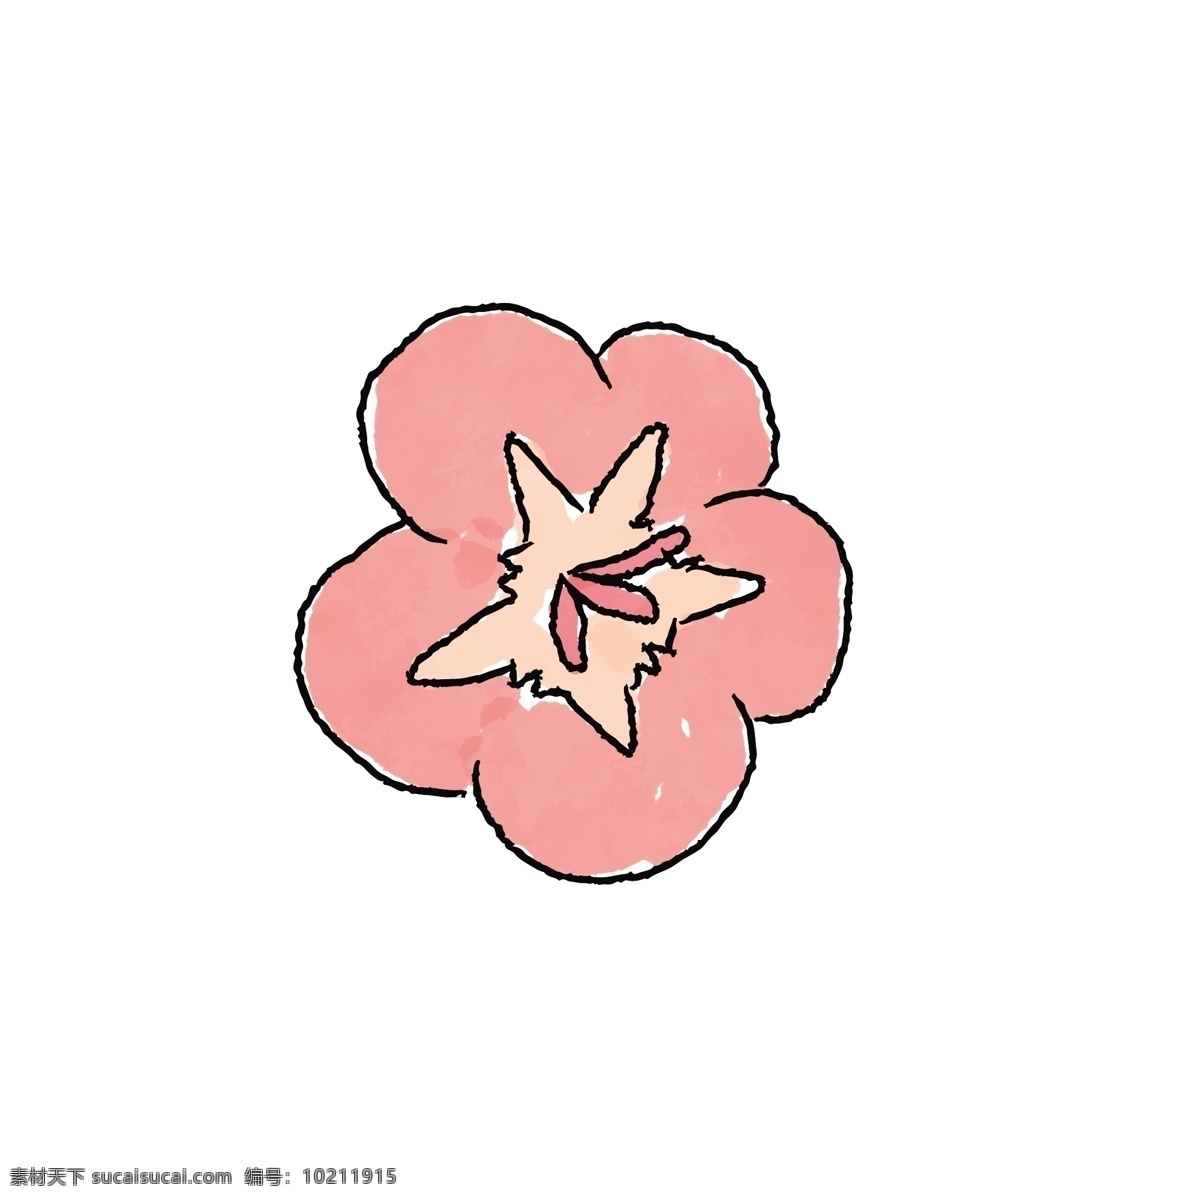 手绘 淡 粉色 桃花 矢量 手绘桃花 粉色桃花 手绘粉色 粉色的 可爱桃花 可爱的 手绘可爱的 手绘的桃花